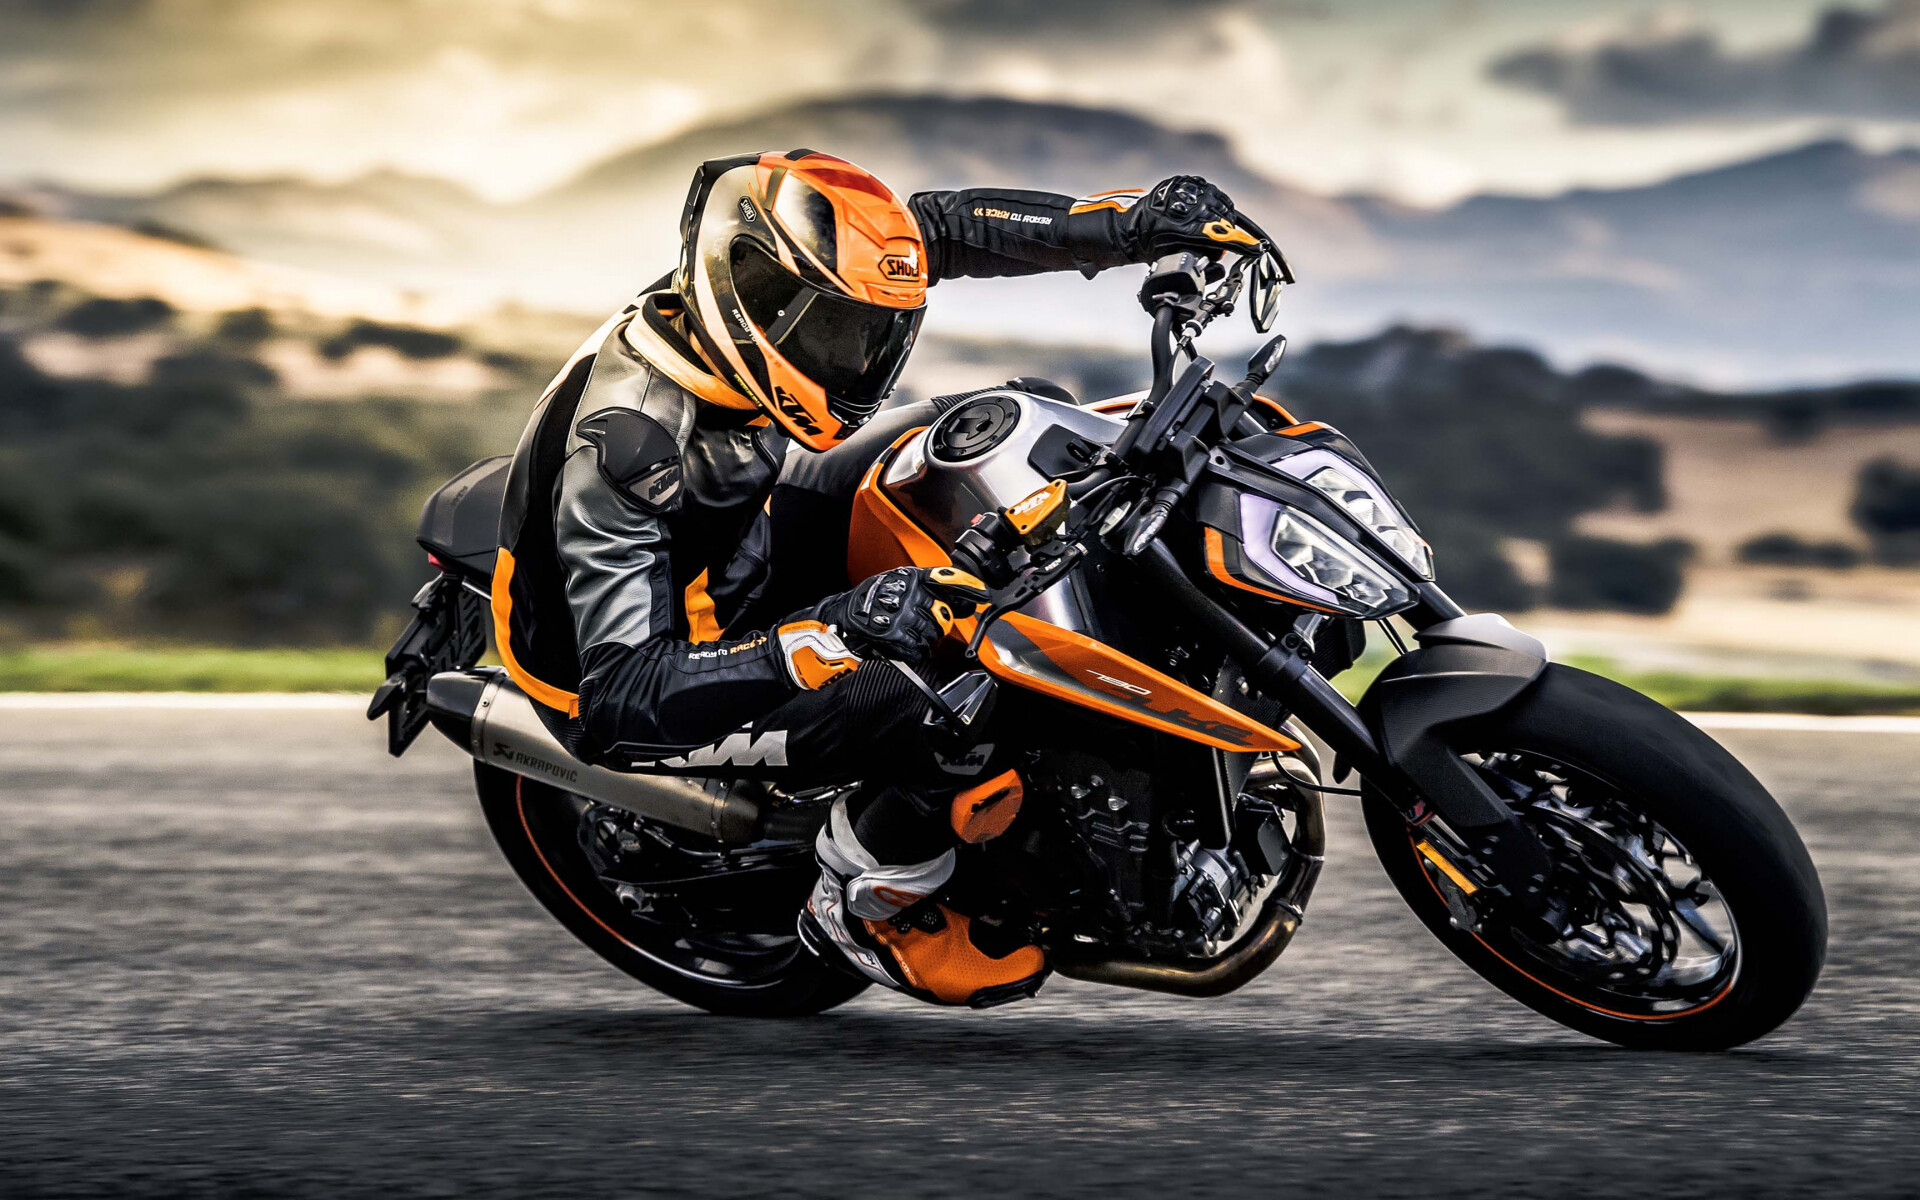 KTM motorcycles, 2018 Duke sports bike, Widescreen HD wallpaper, Breathtaking ride, 1920x1200 HD Desktop